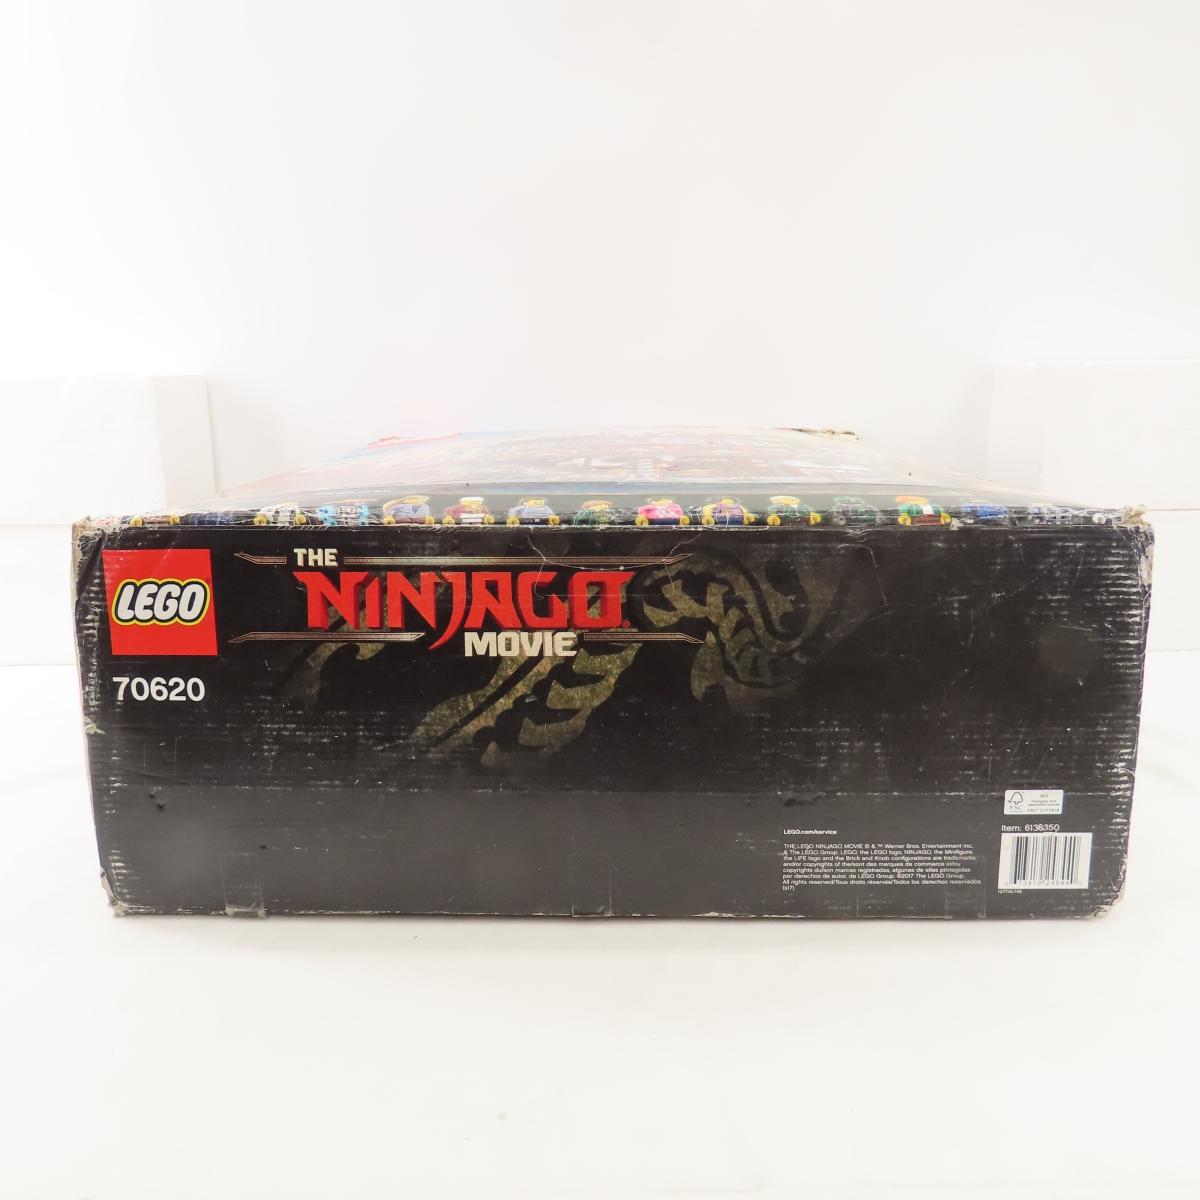 Lego The Ninjago Movie 70620 open box.